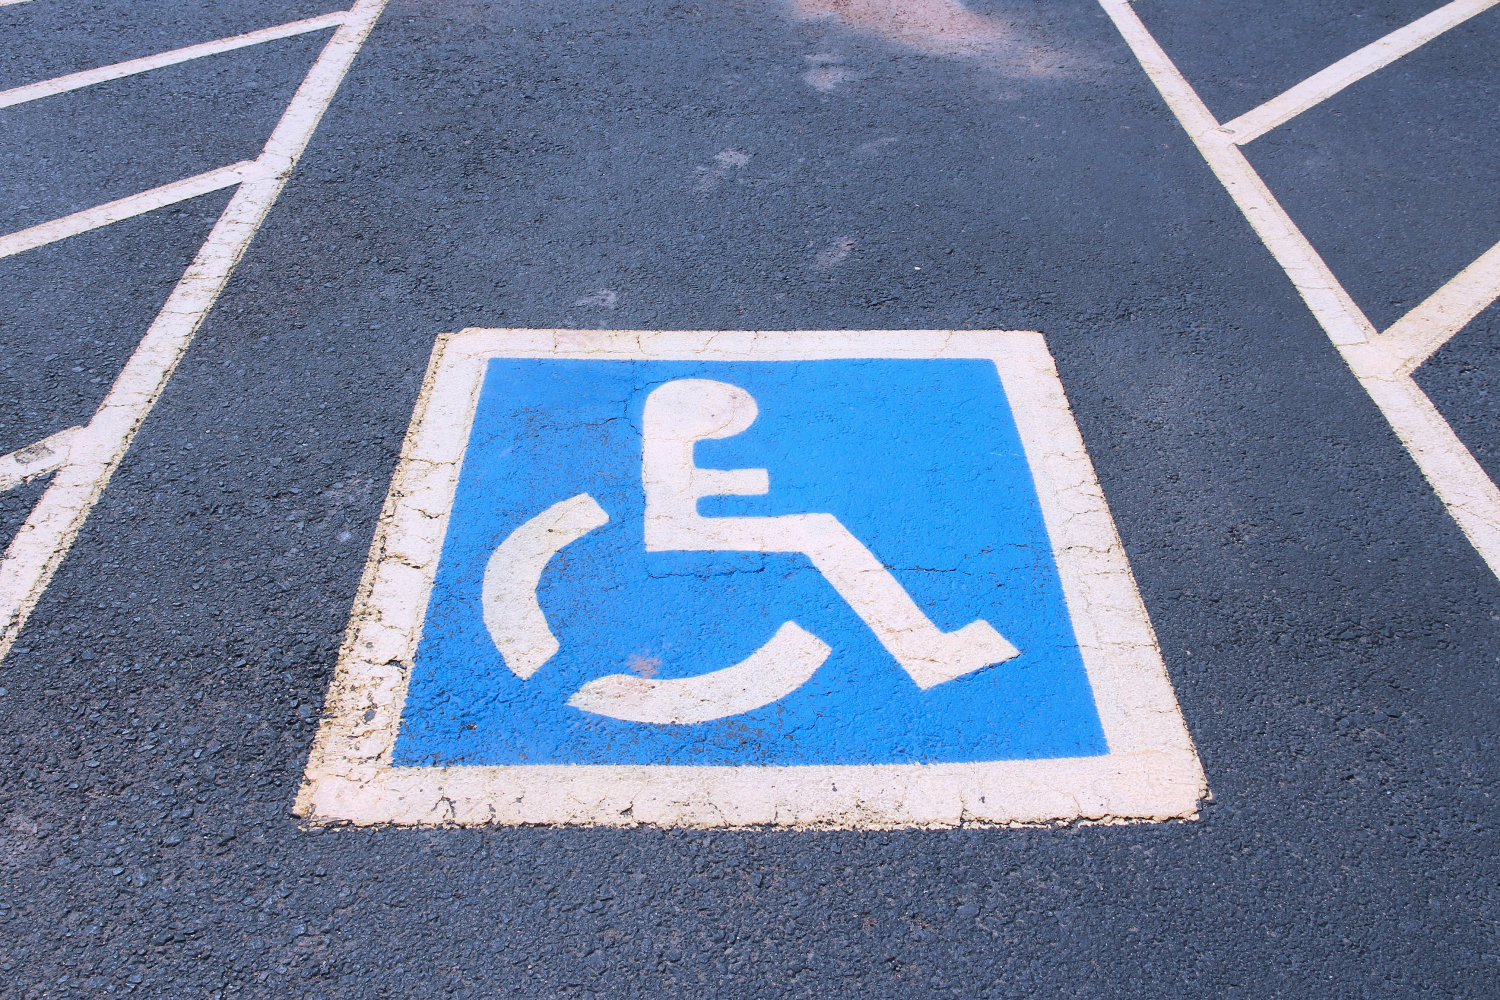 Parking spot disabled